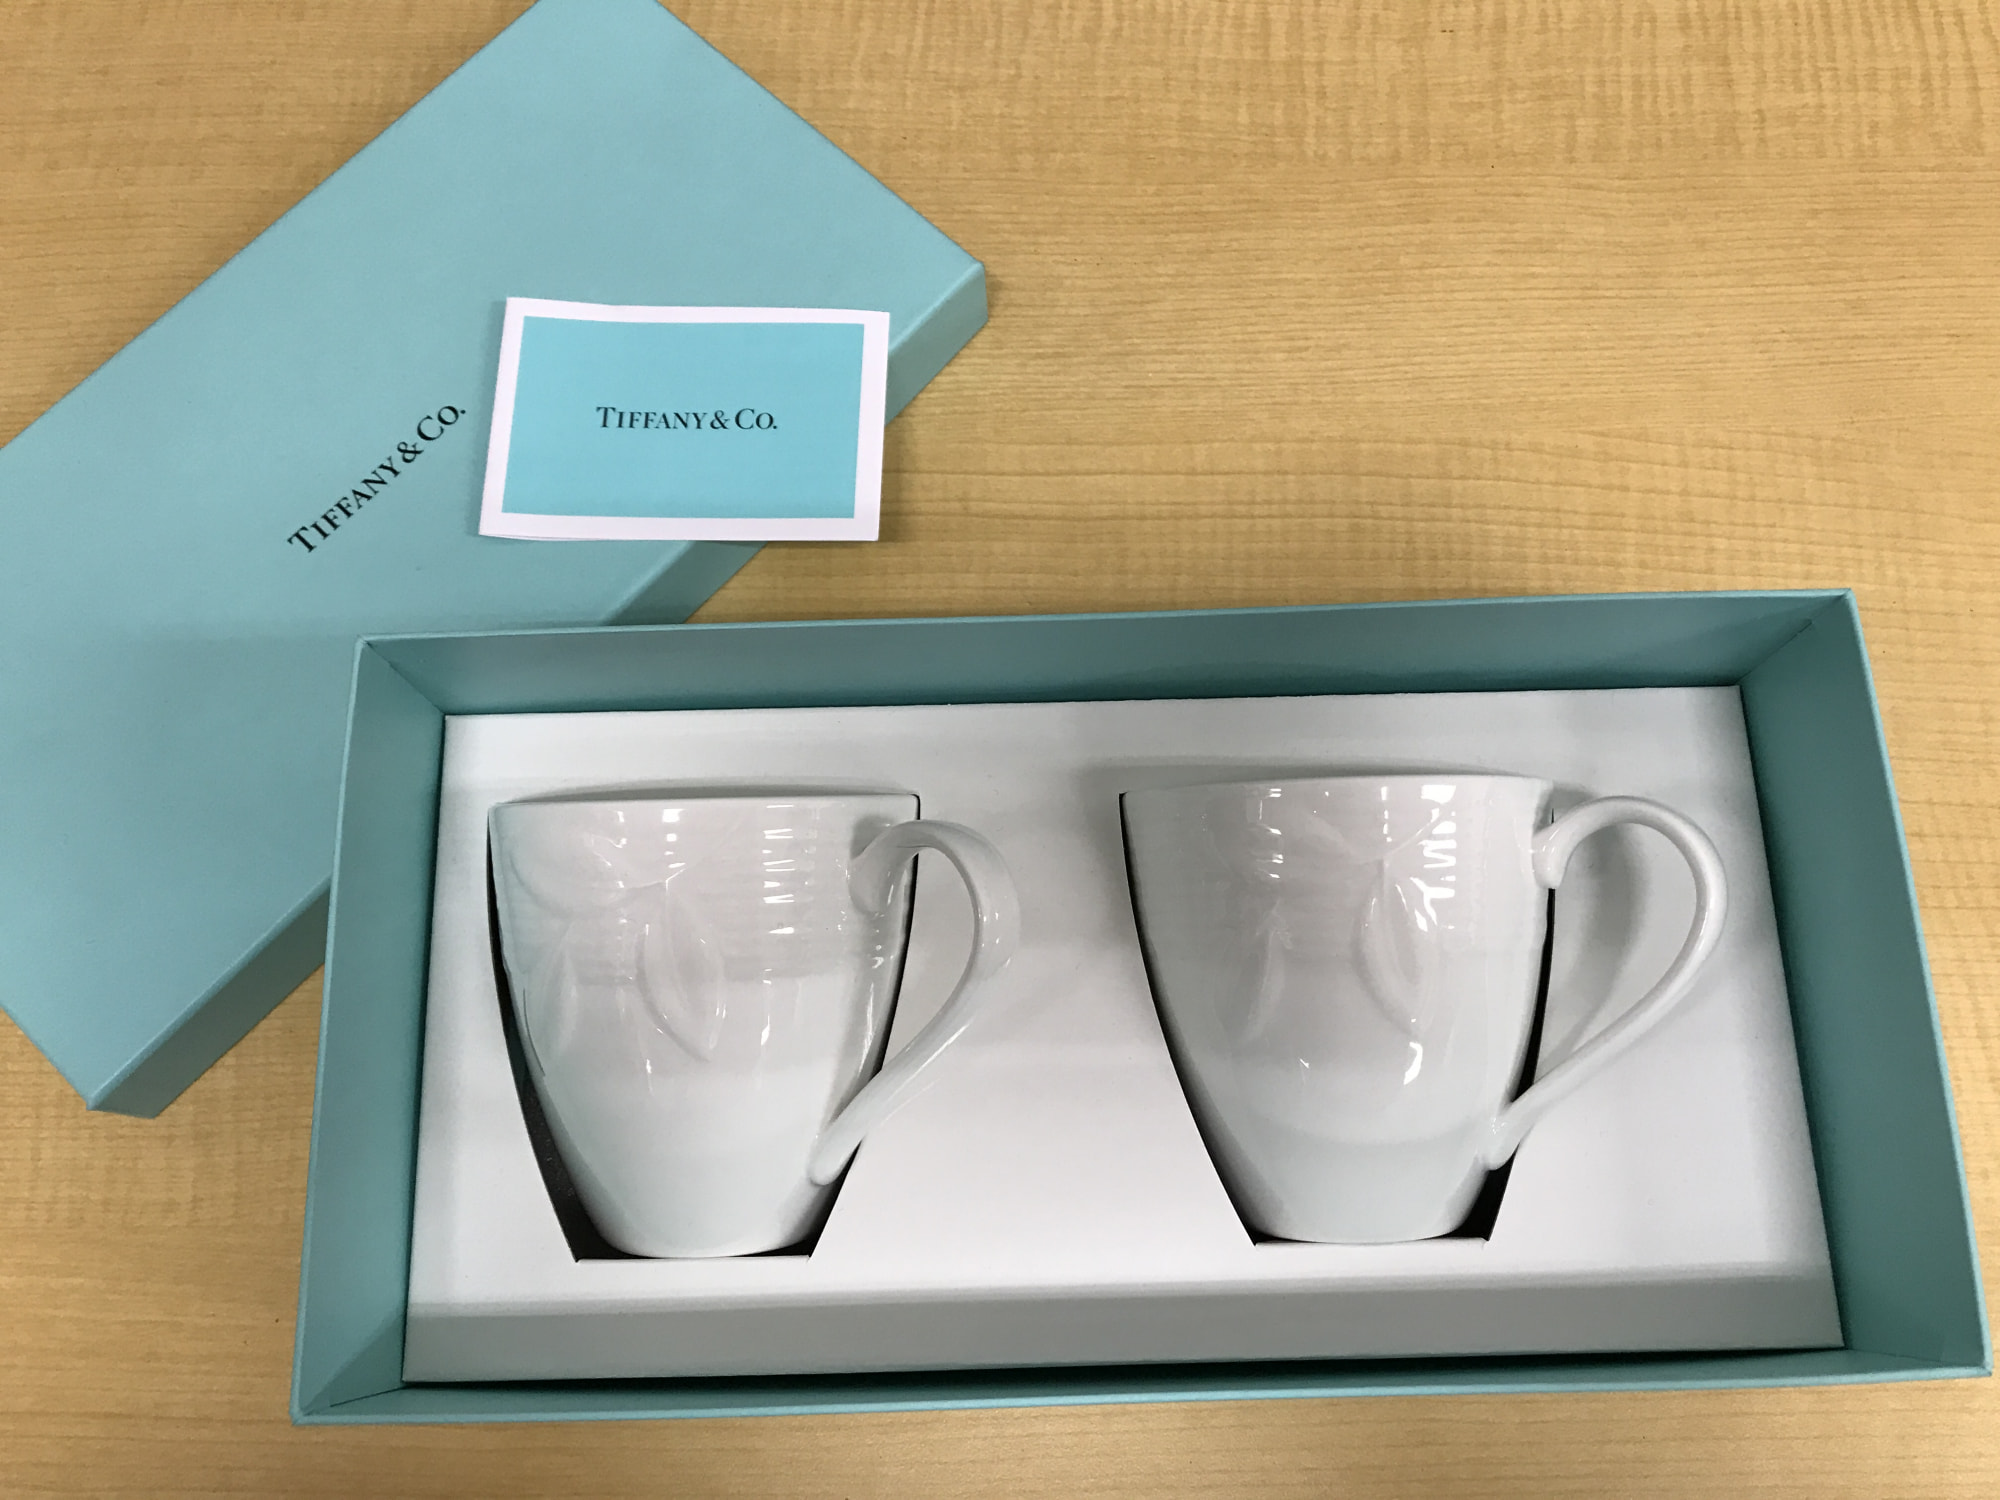 Tiffany&Co テラスペアマグカップ